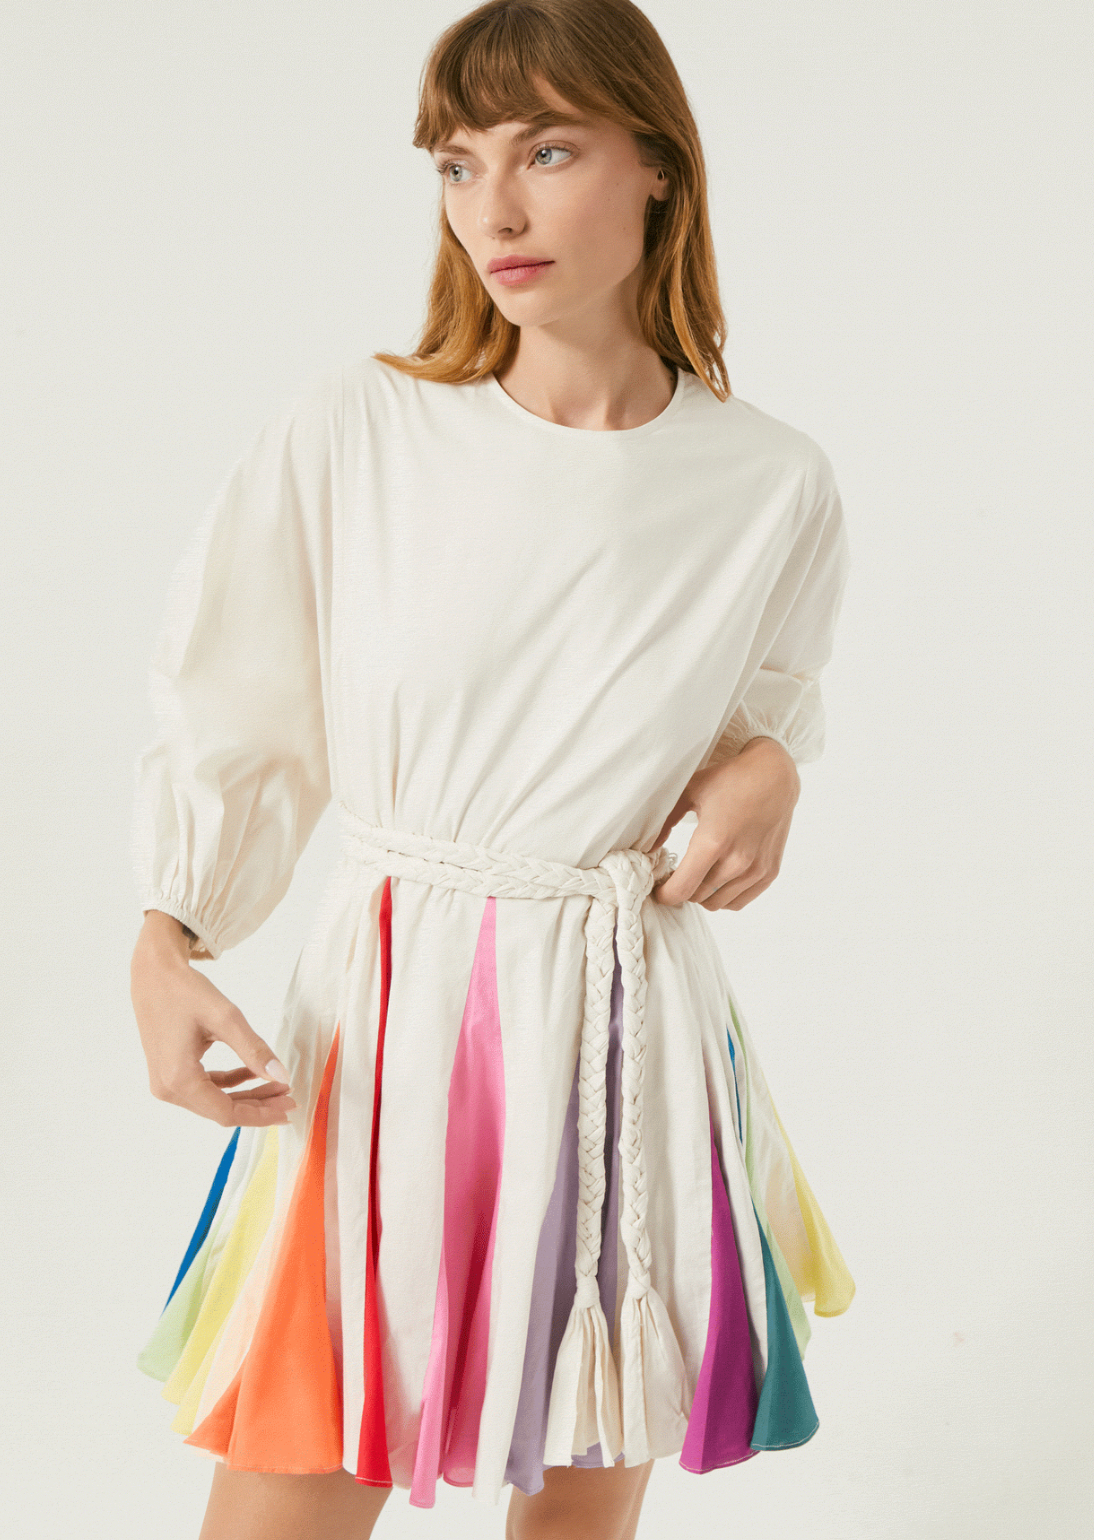 Rhode Ella Dress in Color Block Rainbow